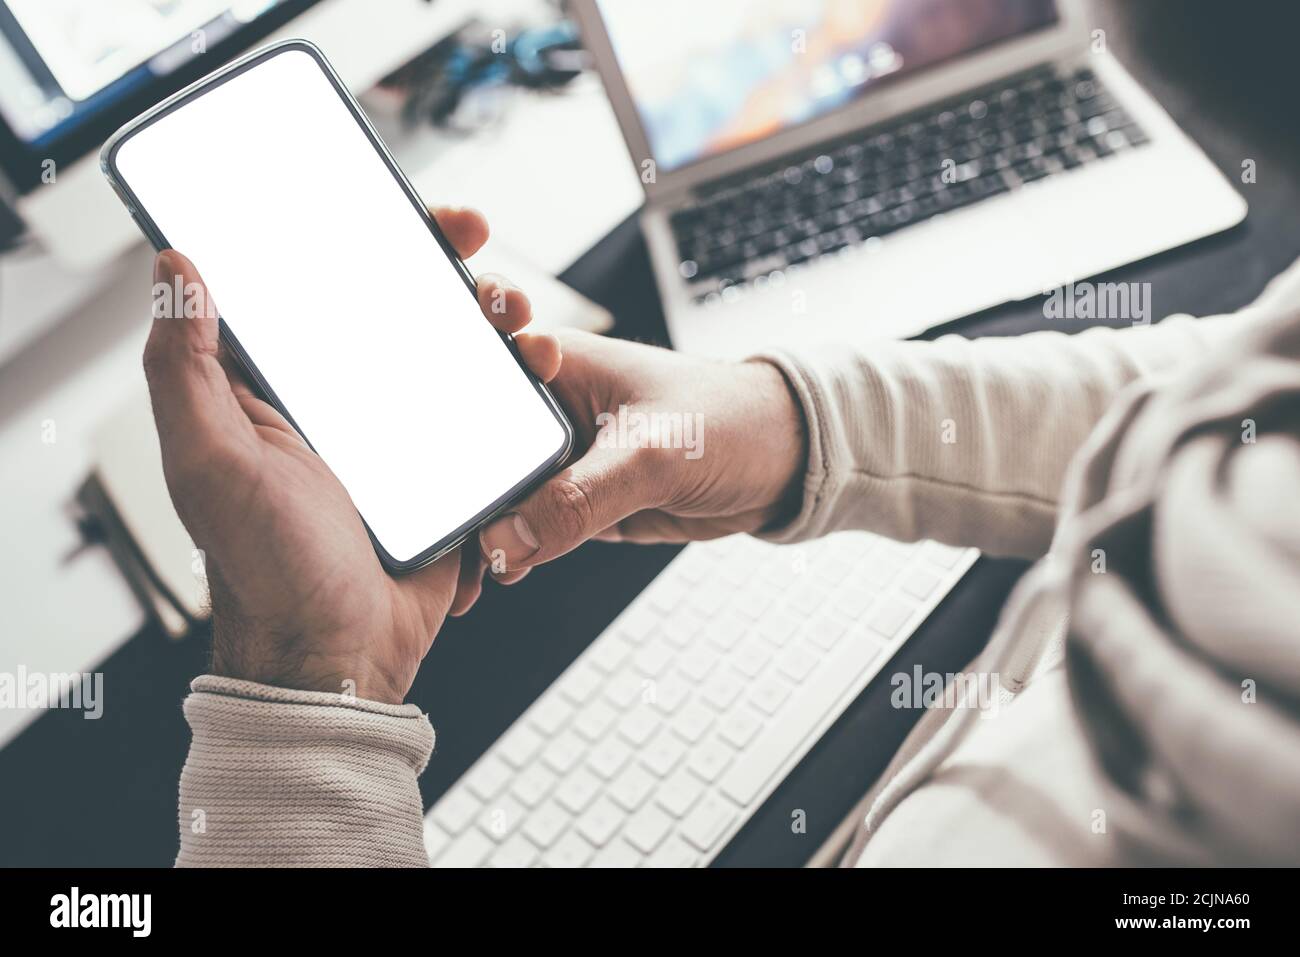 Über die Schulter Blick der Person hält Smartphone mit blank Weißer Touchscreen am Schreibtisch Stockfoto